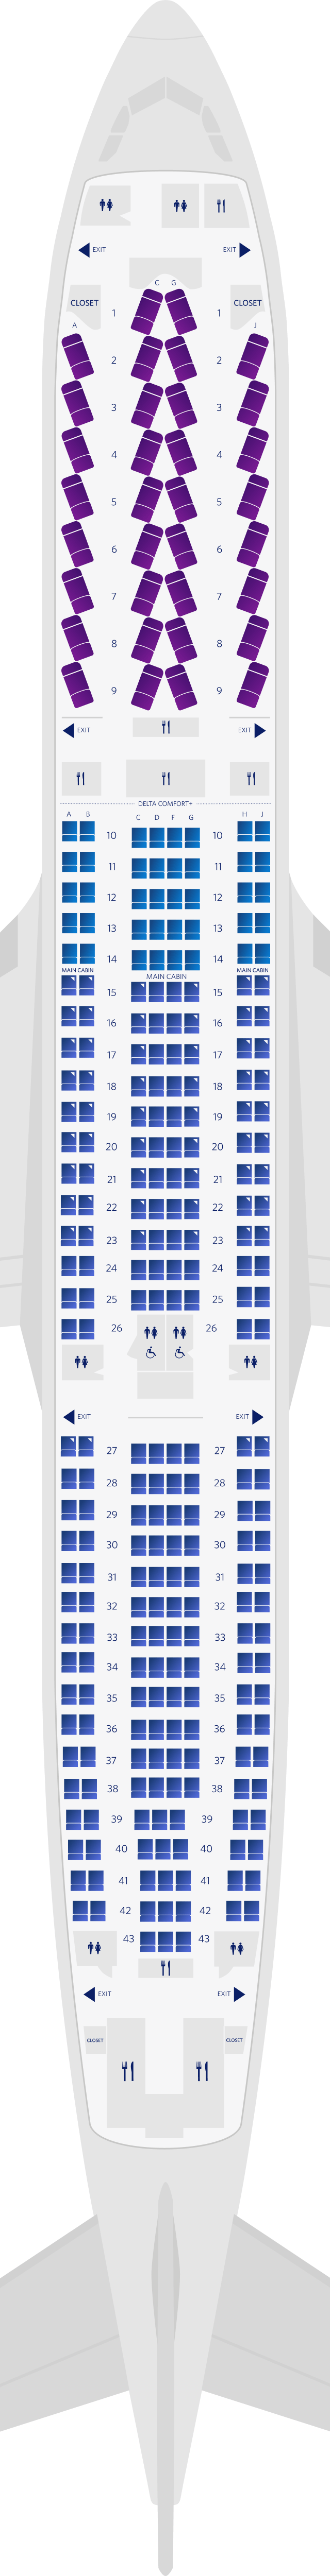 Mapa de asientos del Airbus A300-300 de 3 cabinas (333)